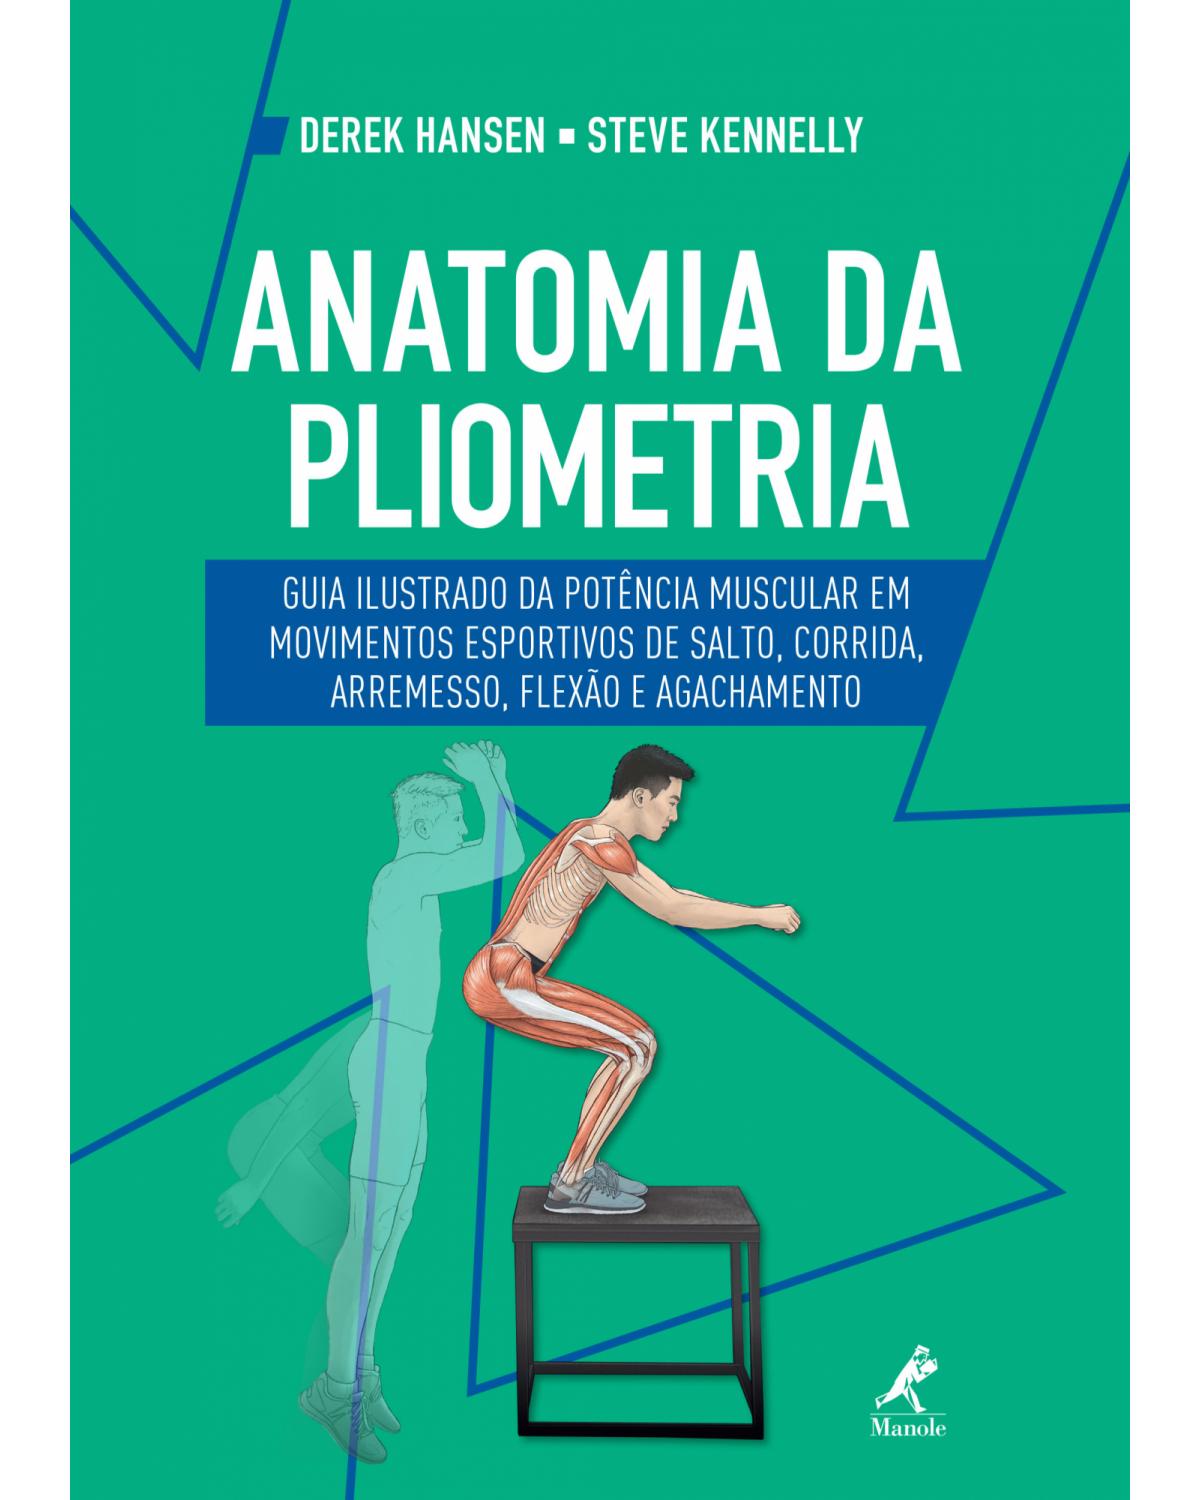 Anatomia da pliometria - guia ilustrado da potência muscular em movimentos esportivos de salto, corrida, arremesso, flexão e agachamento - 1ª Edição | 2019